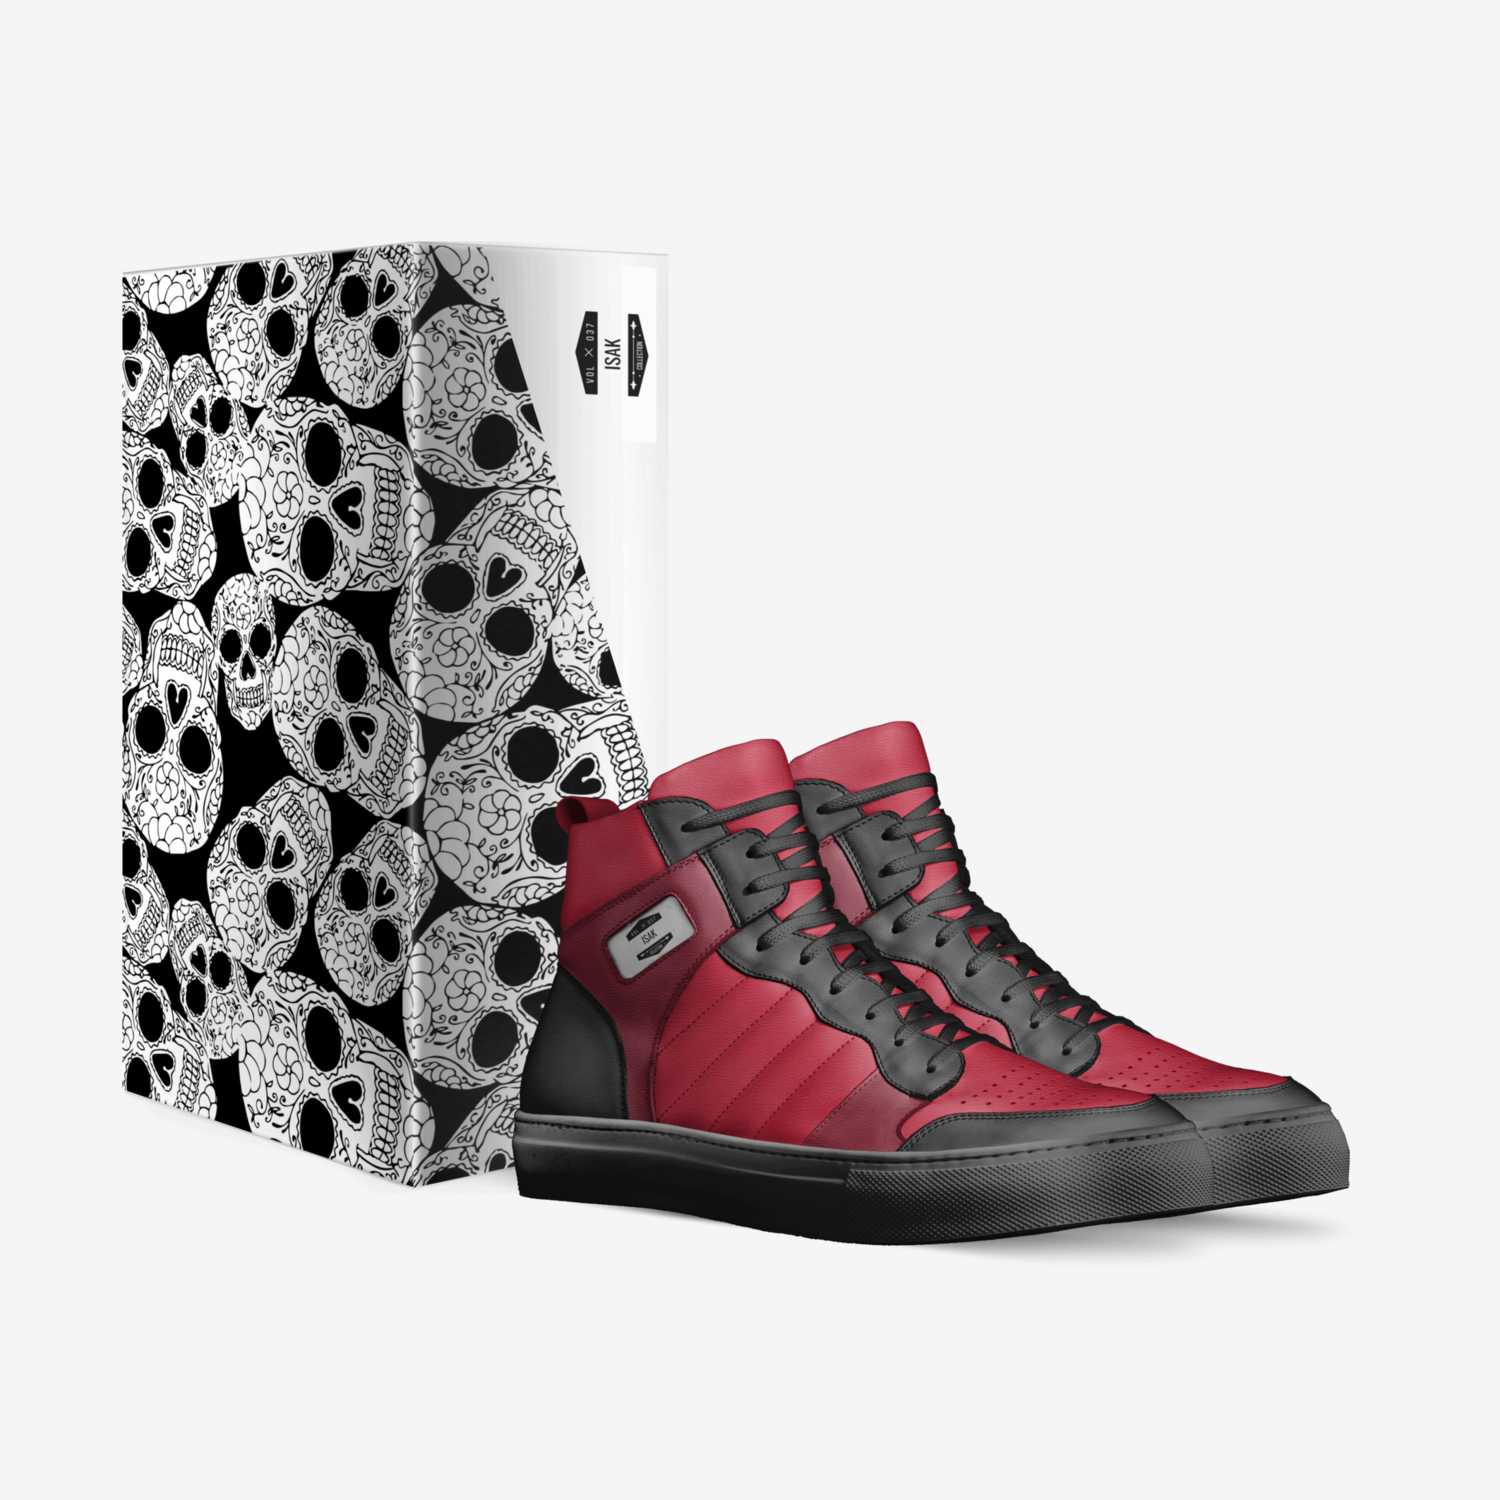 isak custom made in Italy shoes by Isak Kuteli | Box view